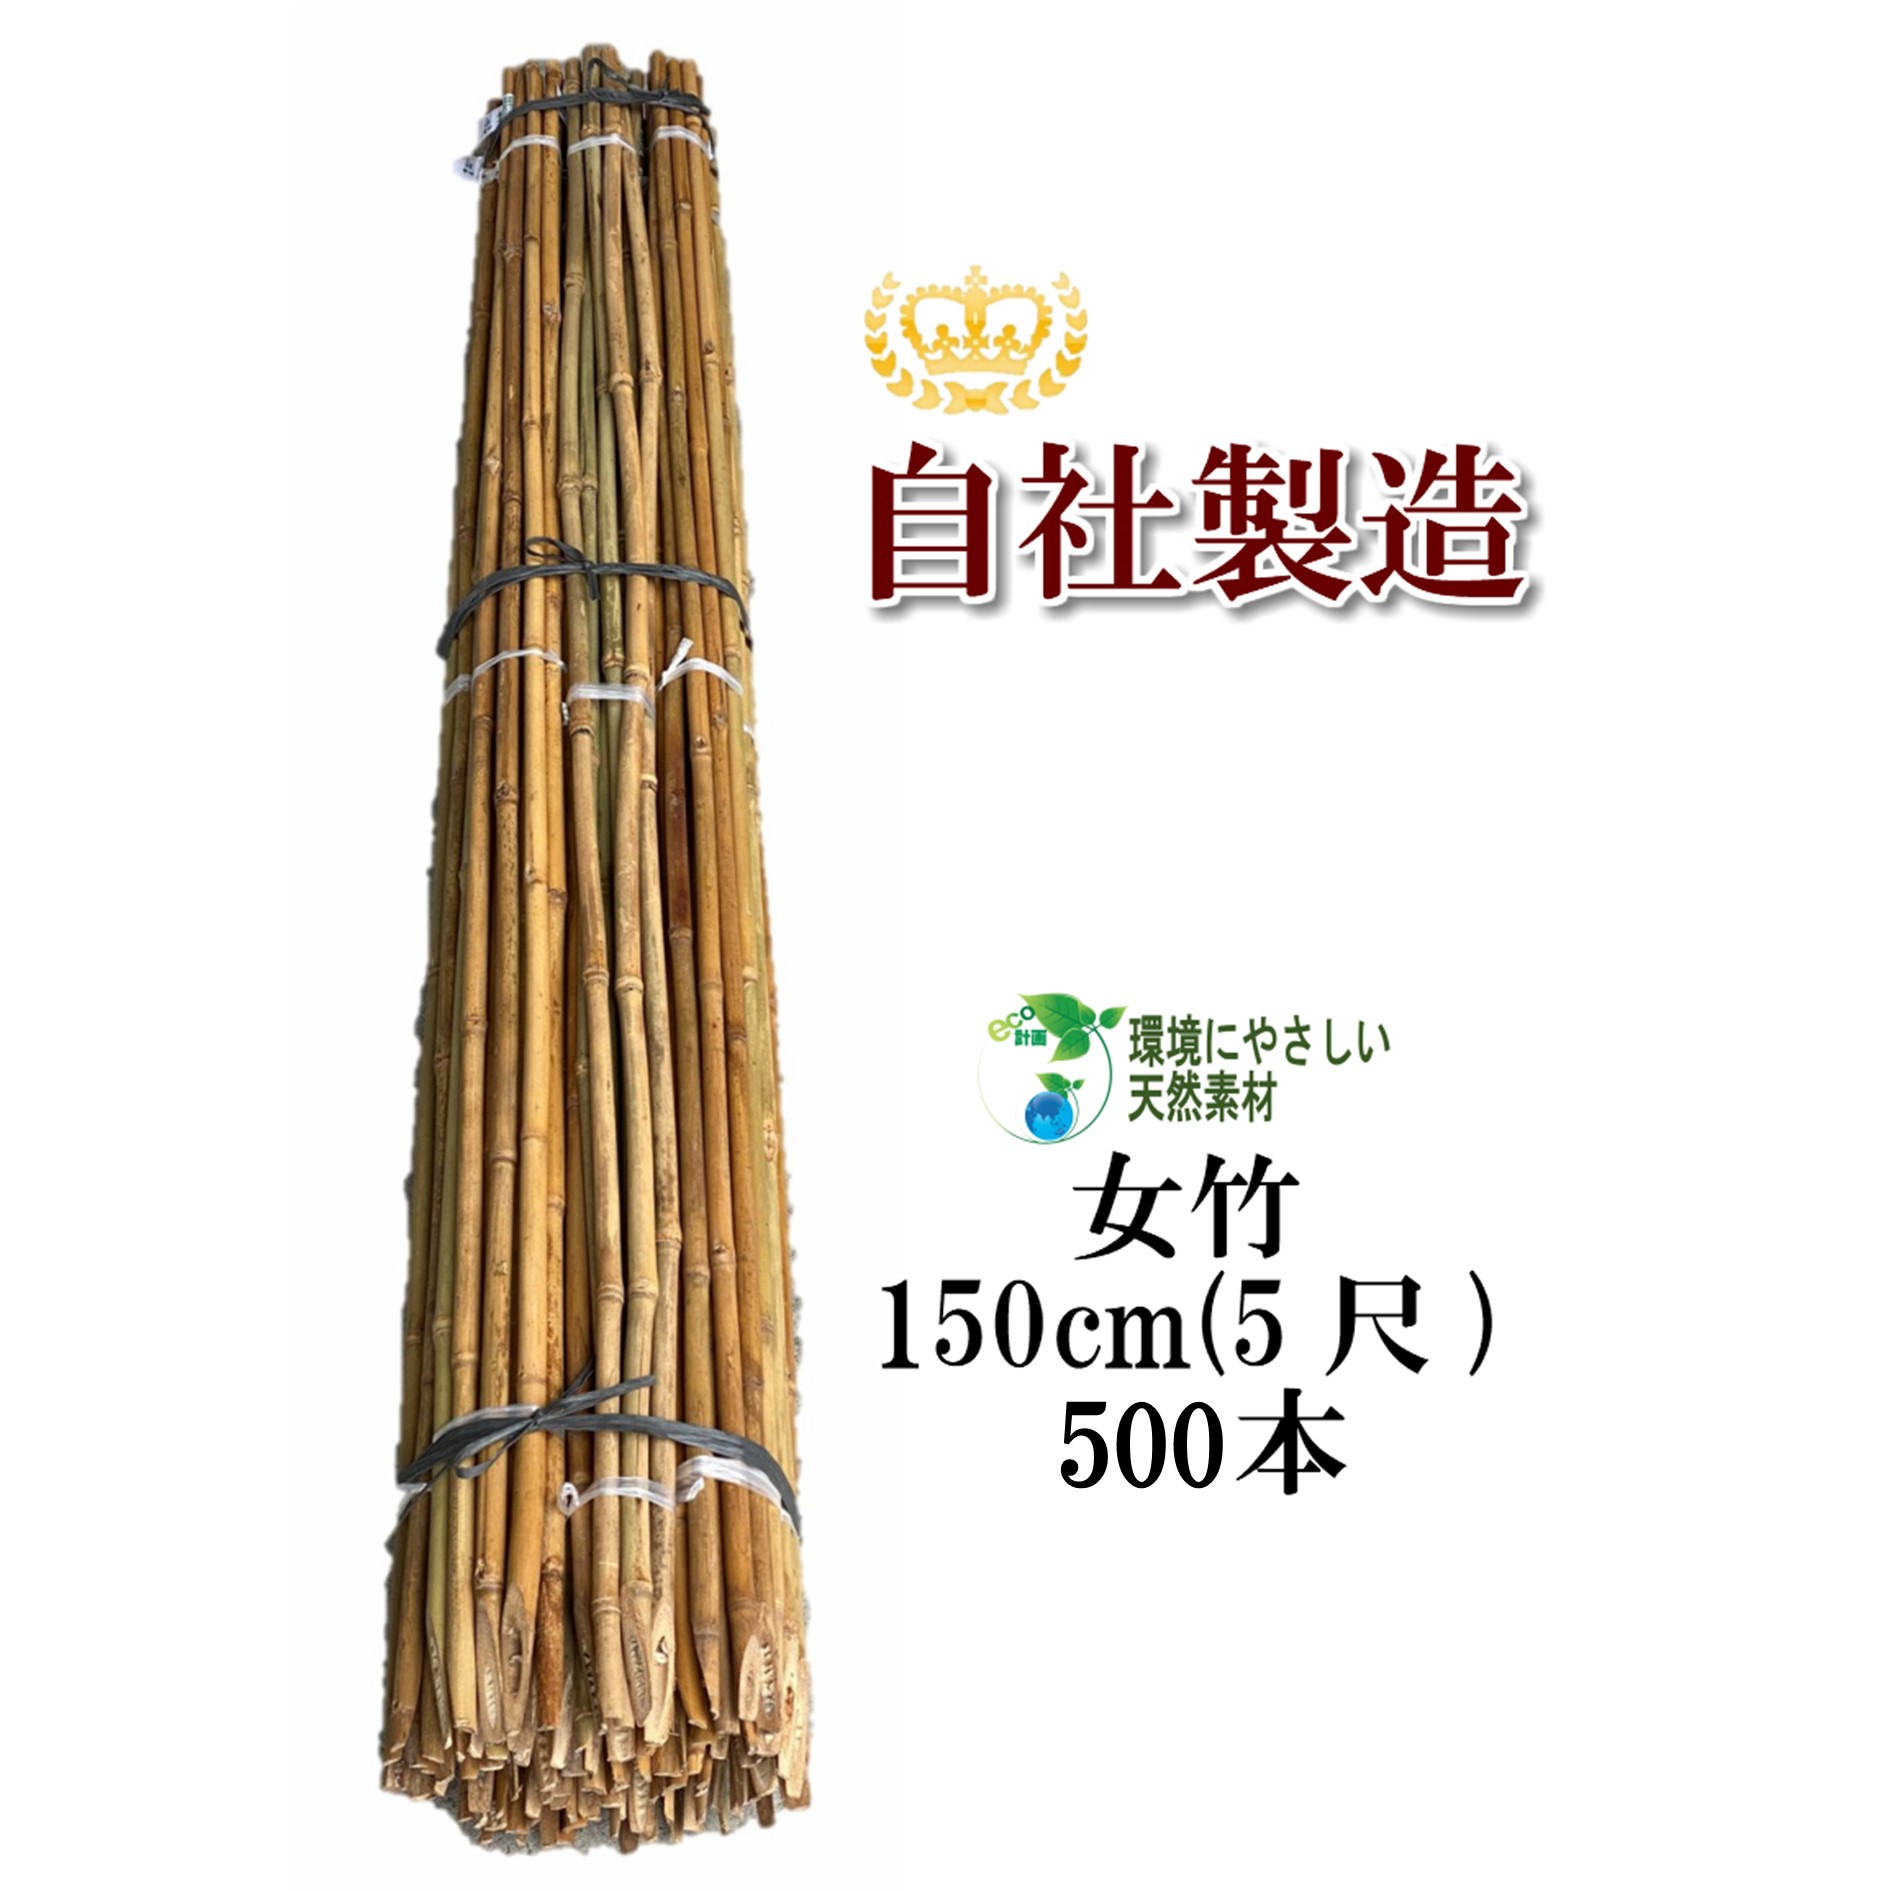 女竹 150cm 500本 農業用、園芸用の支柱として幅広くご利用いただけます。 竹 支柱 篠竹